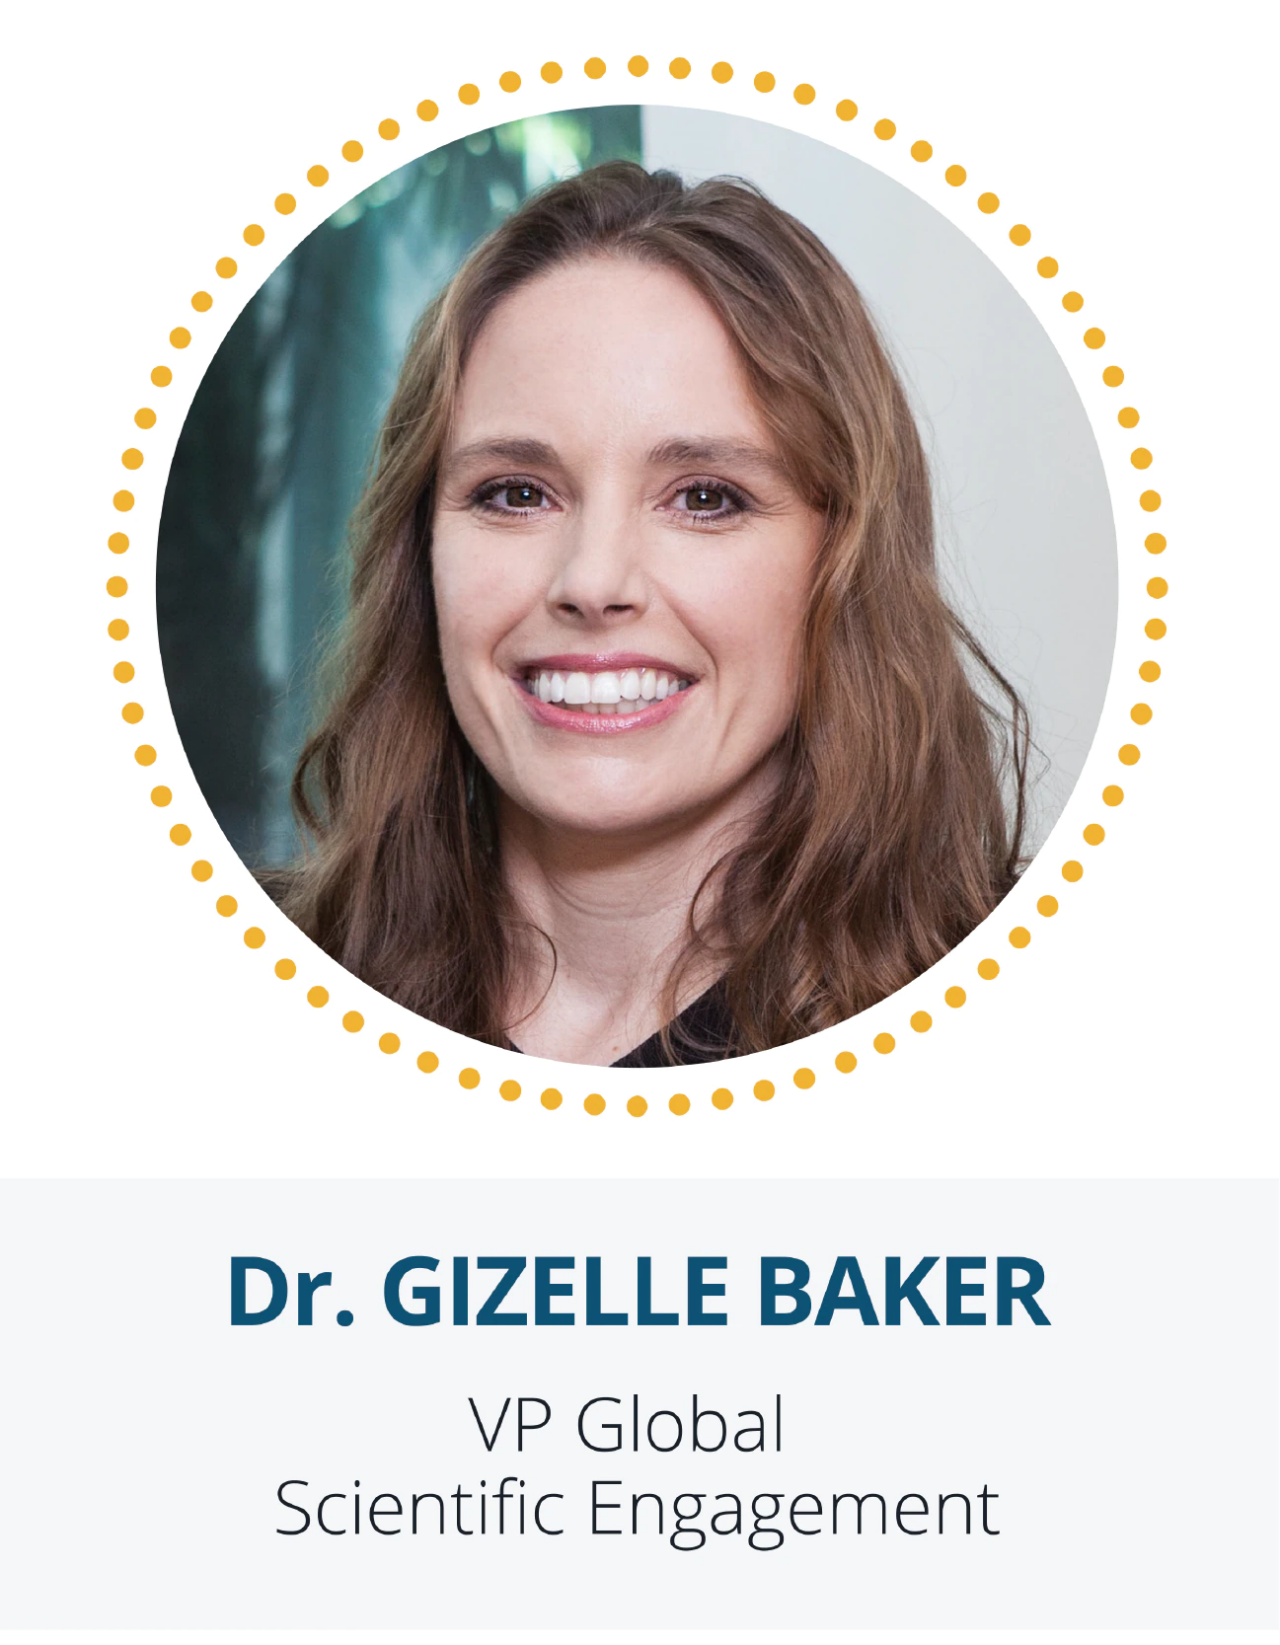 Dr. Gizelle Baker, VP Global Scientific Enagement